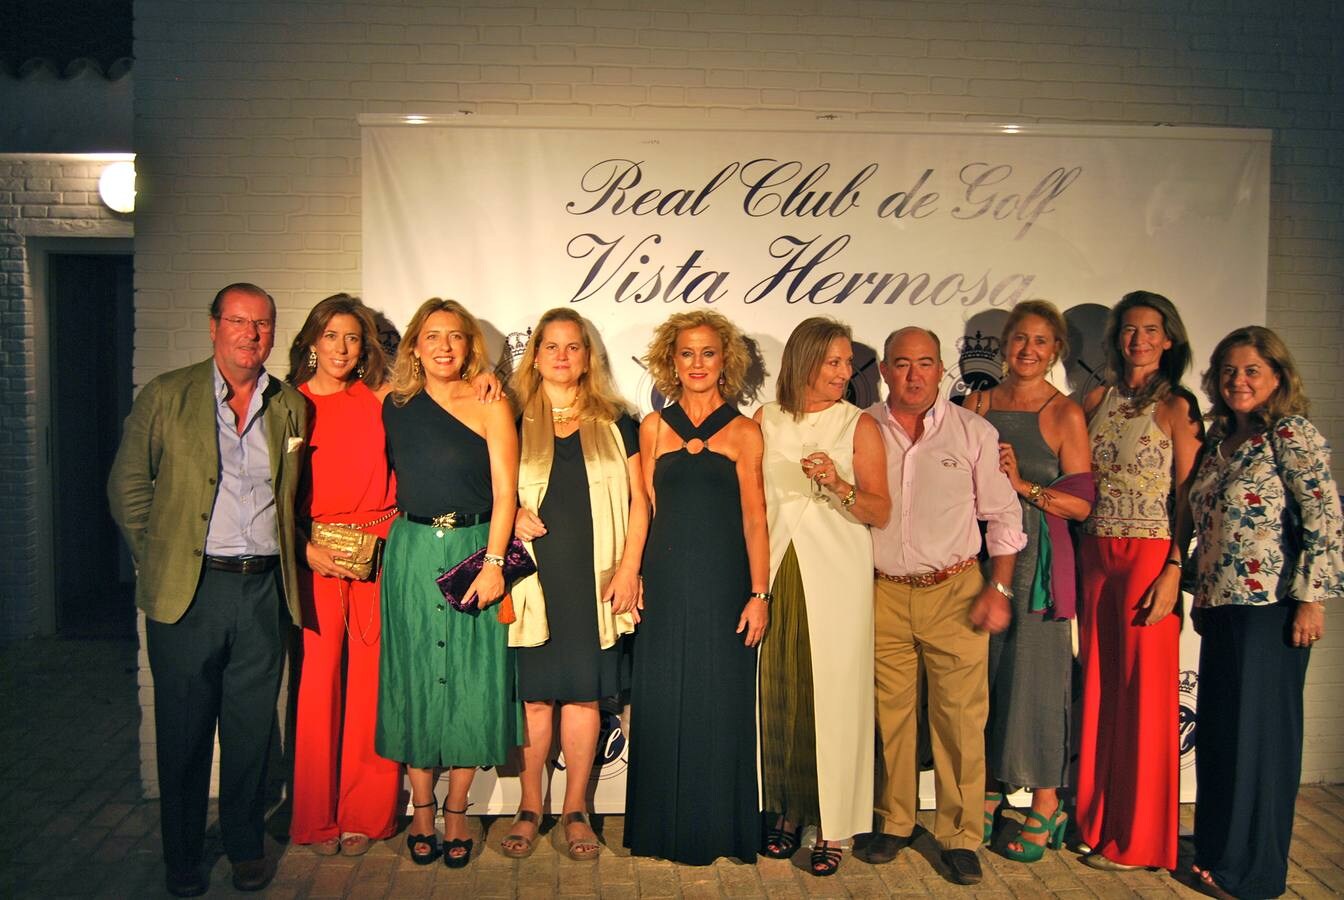 Maridos y mujeres de los miembros de la junta directiva del Real Club de Golf Vista Hermosa